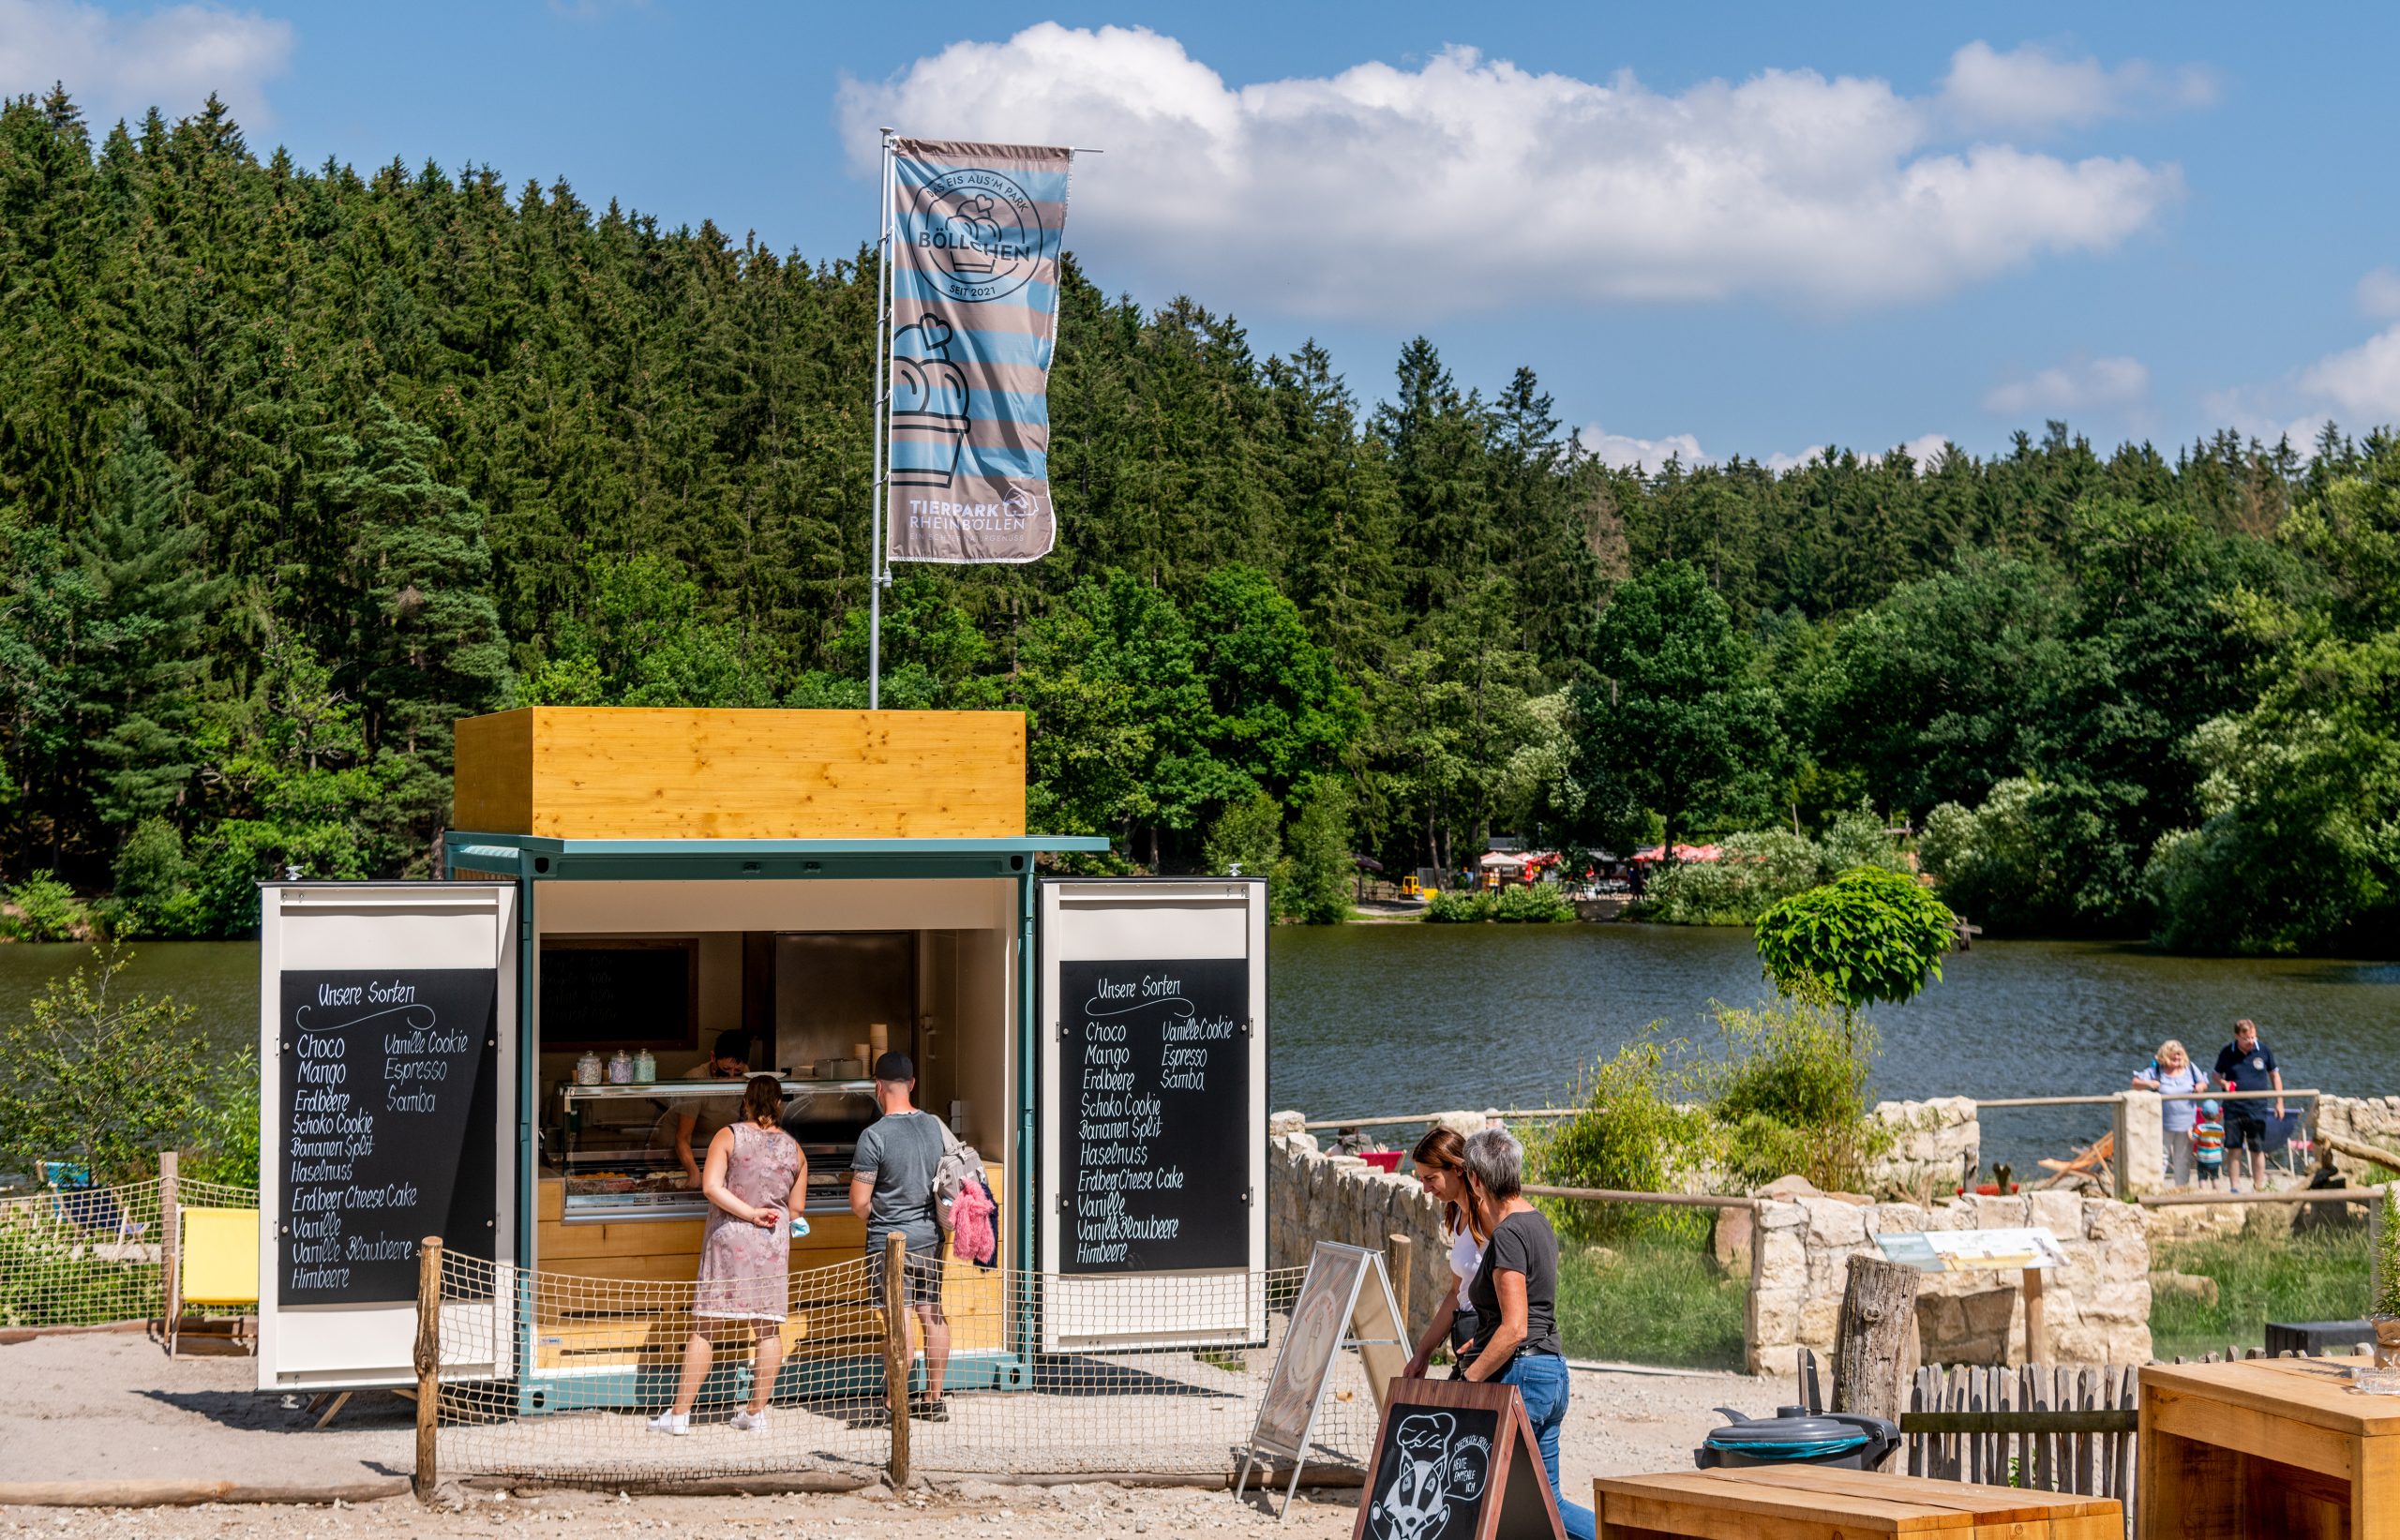 ROKA schafft dynamische Gastro-Lösungen im Tierpark Rheinböllen